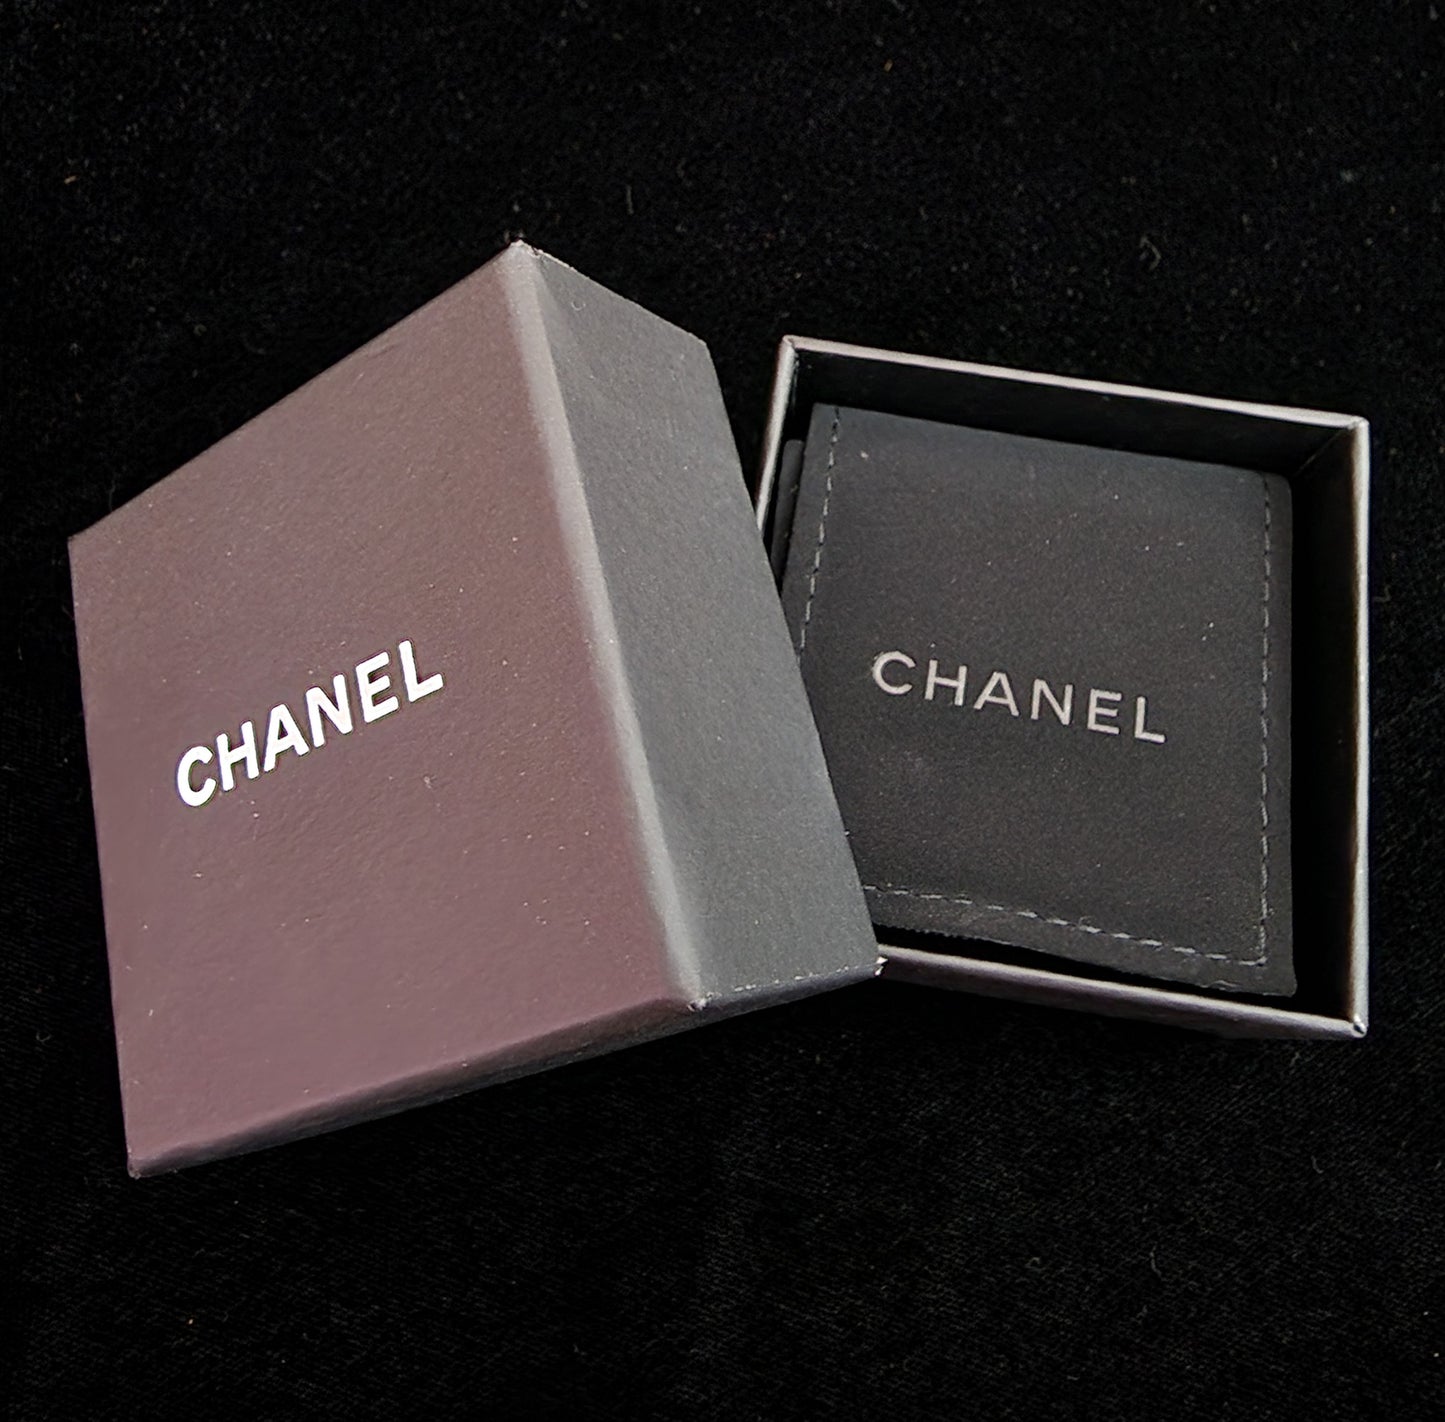 Pre-Loved Chanel Earrings